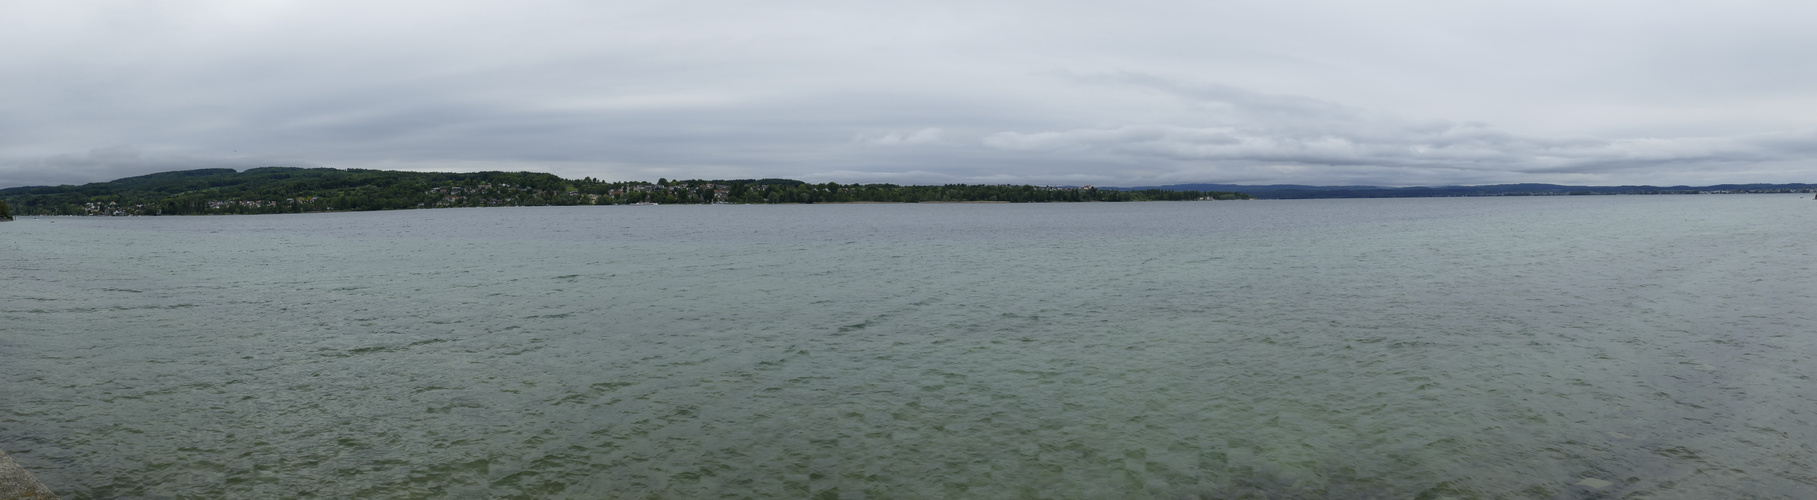 Blick über den Rhein bei schlechten Wetter